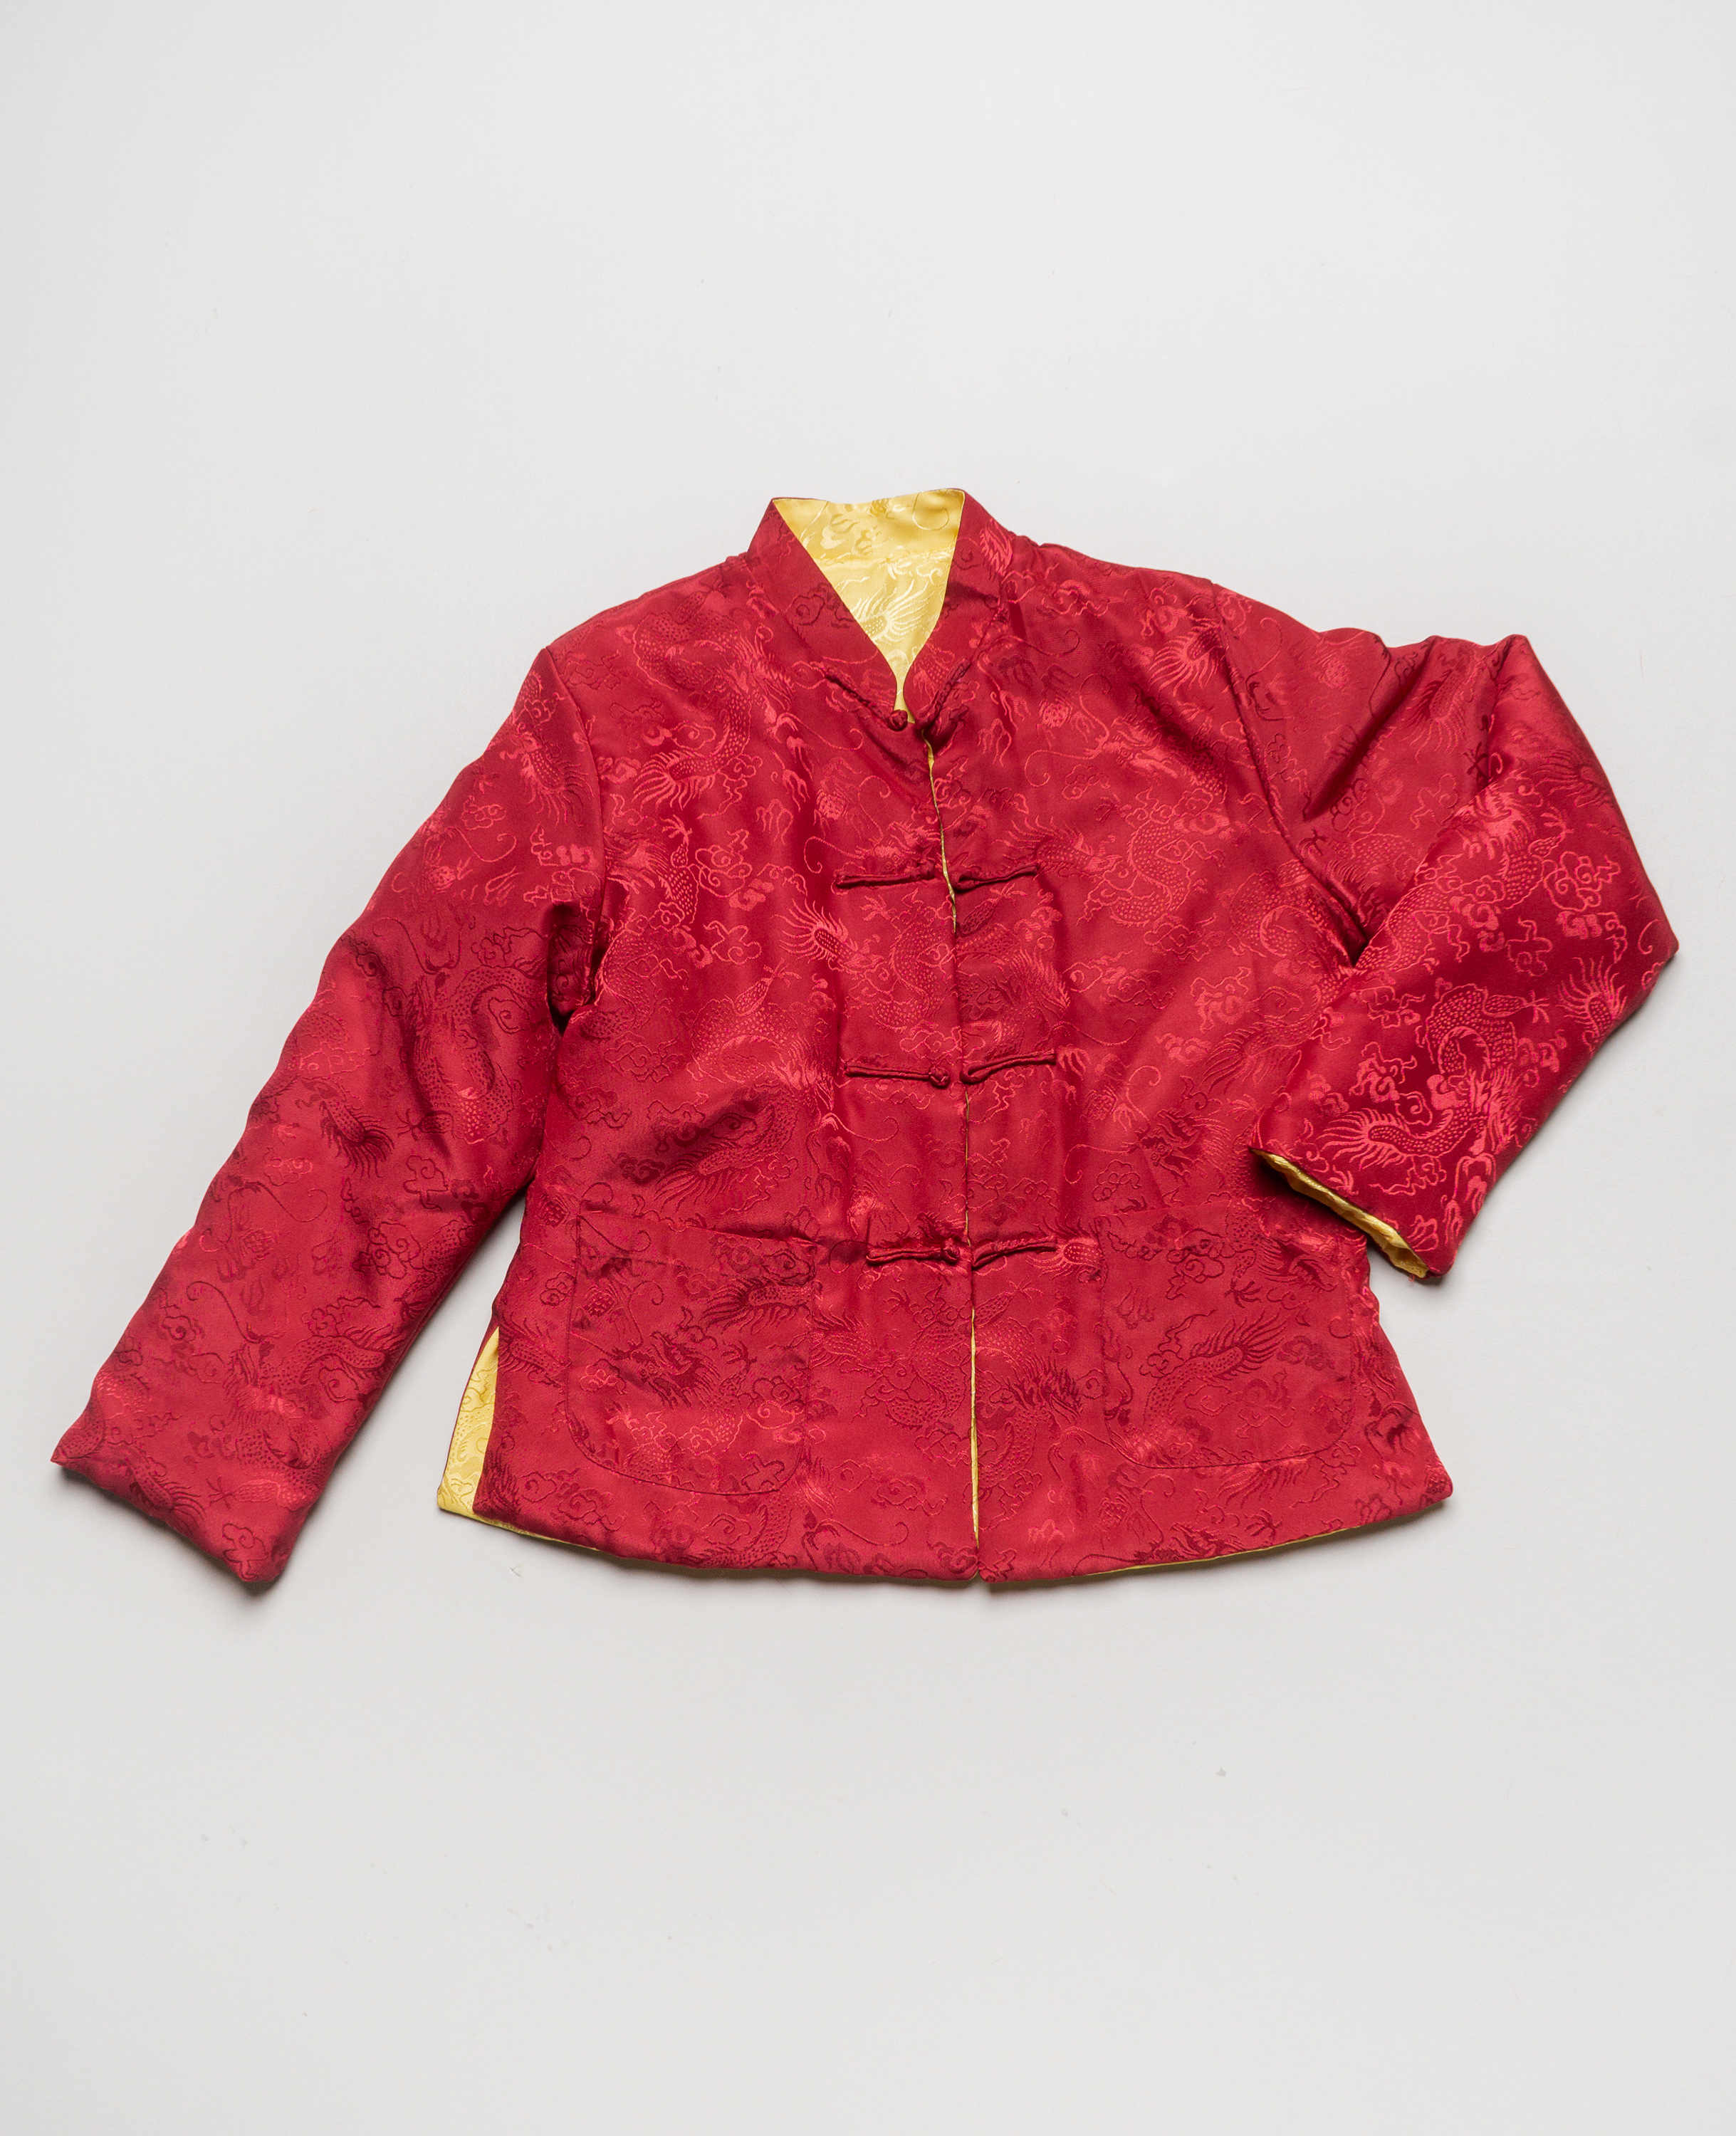 1 Tang Jacke Gr. 152 - Kostüm Karneval Fasching chinesische Jacke Rot Gelb Wendejacke